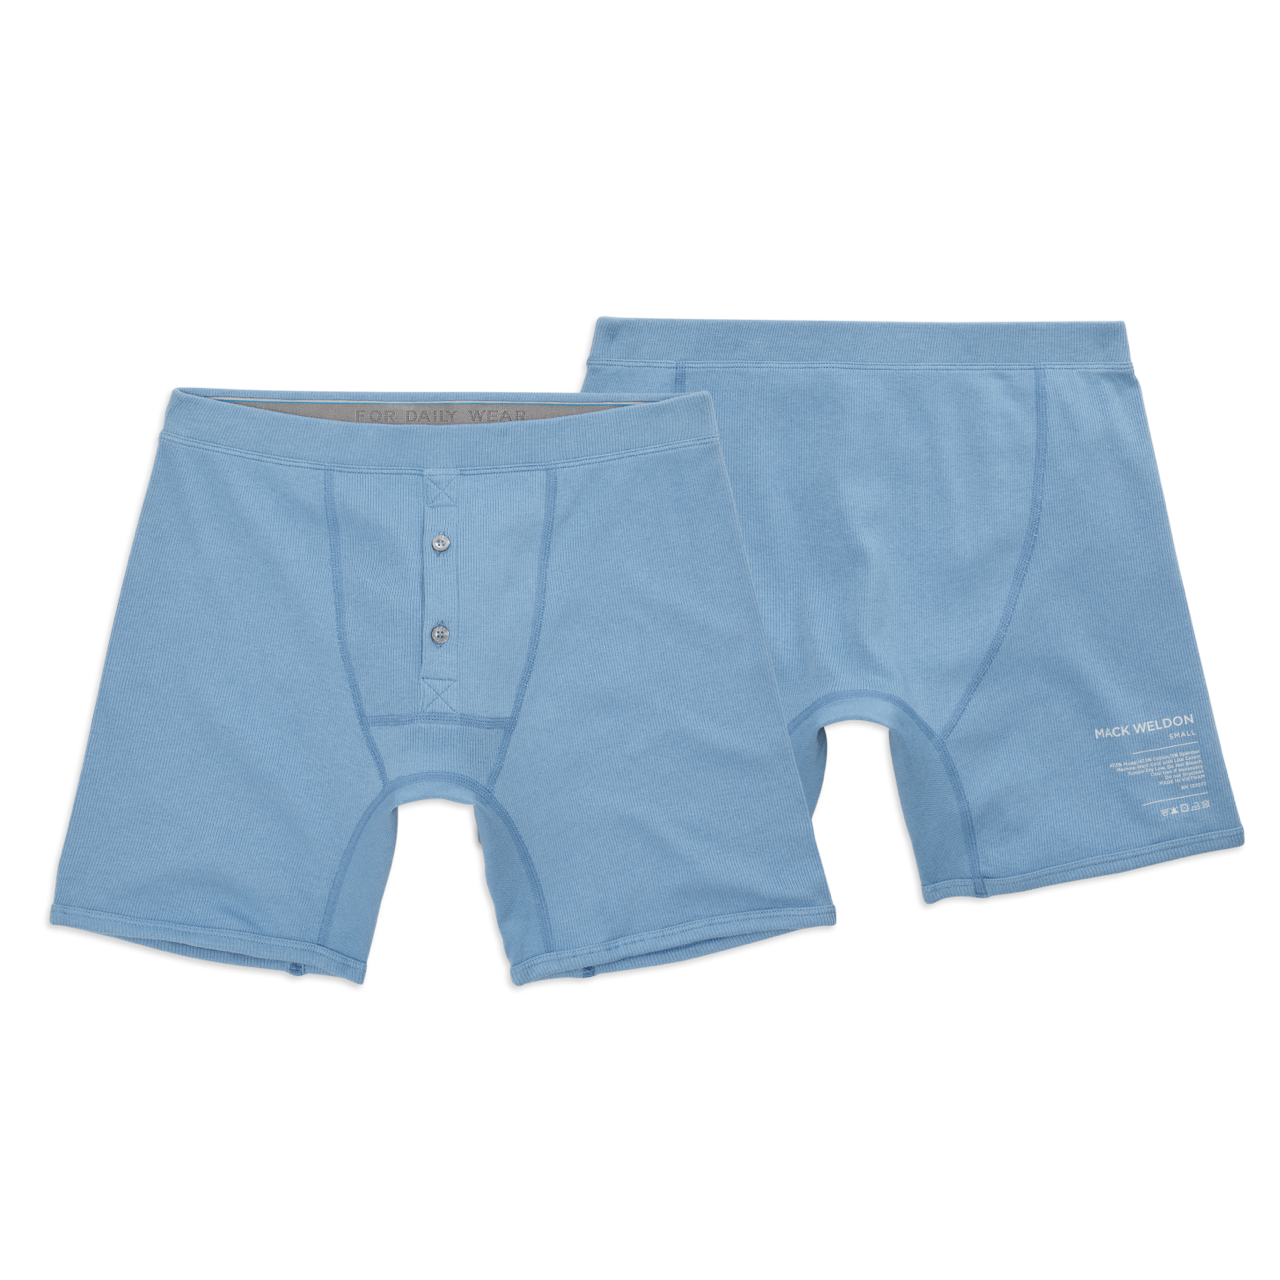 Men's Underwear Boxer Cotton U Convex Double Pouch Bag Ribbed